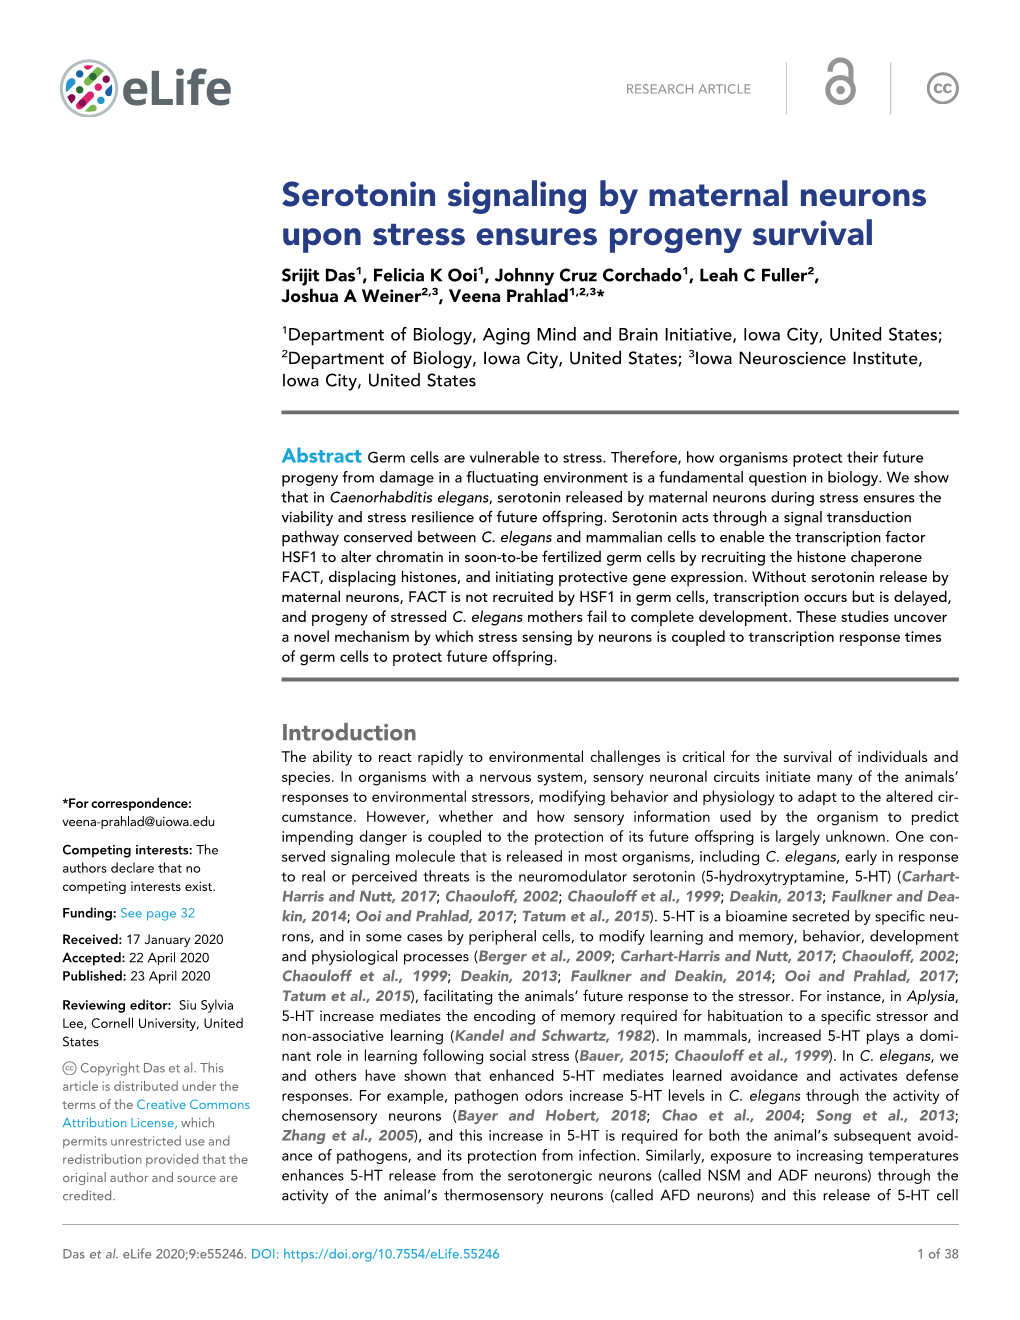 Serotonin Signaling by Maternal Neurons Upon Stress Ensures